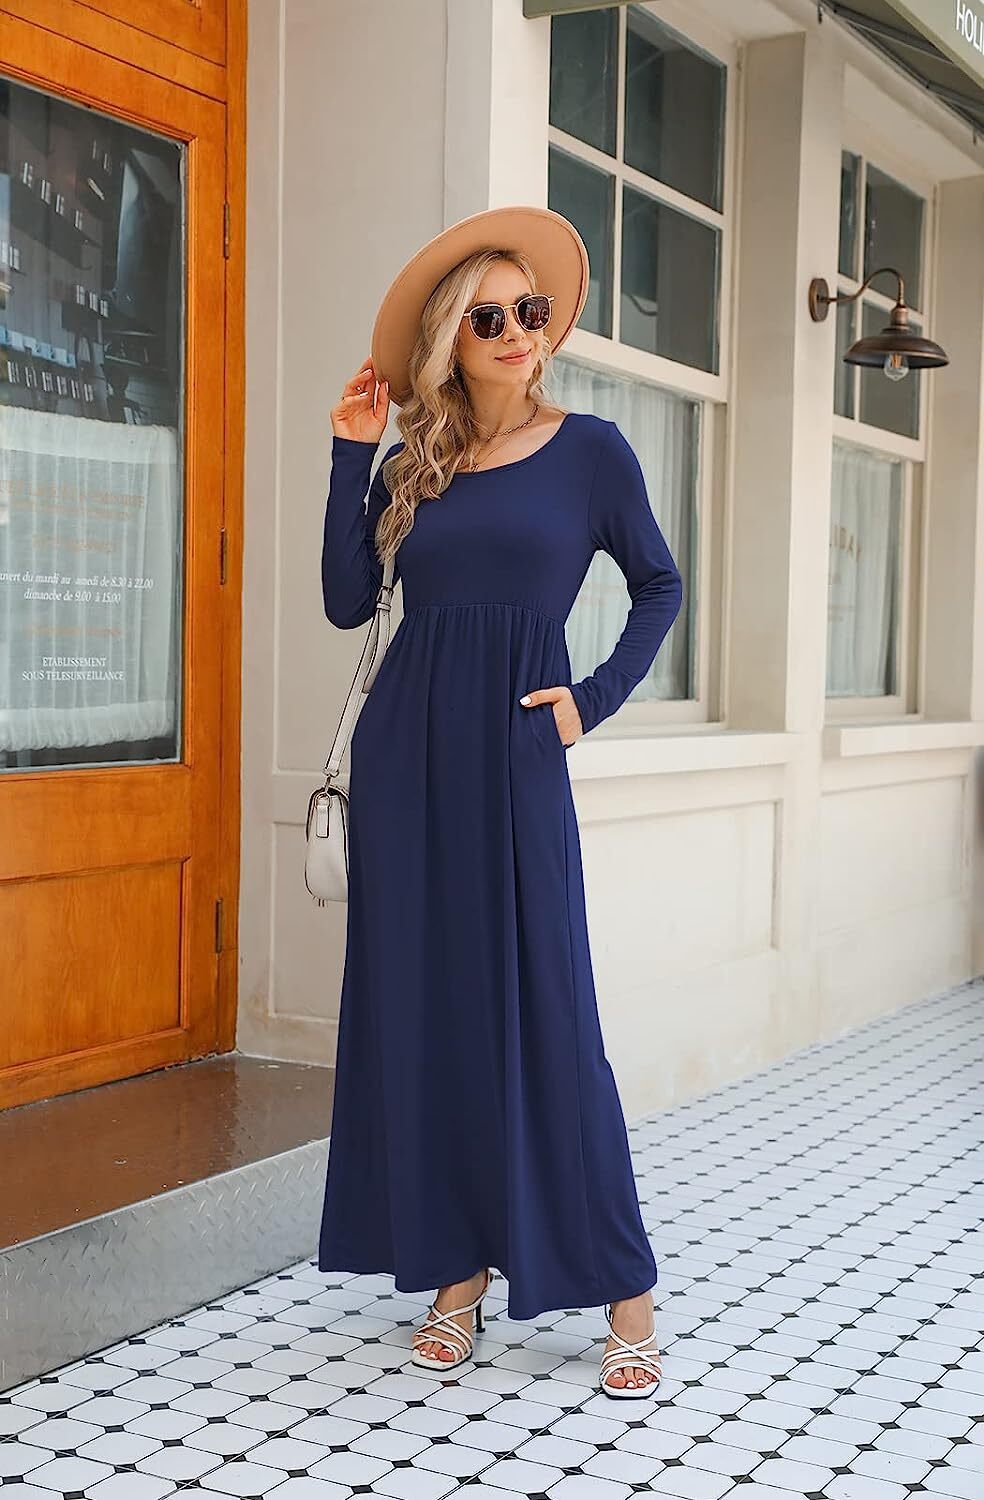 Supnier Women's Short Long Sleeve Maxi Dresses Casual Empire Waist Long Dress with Pockets